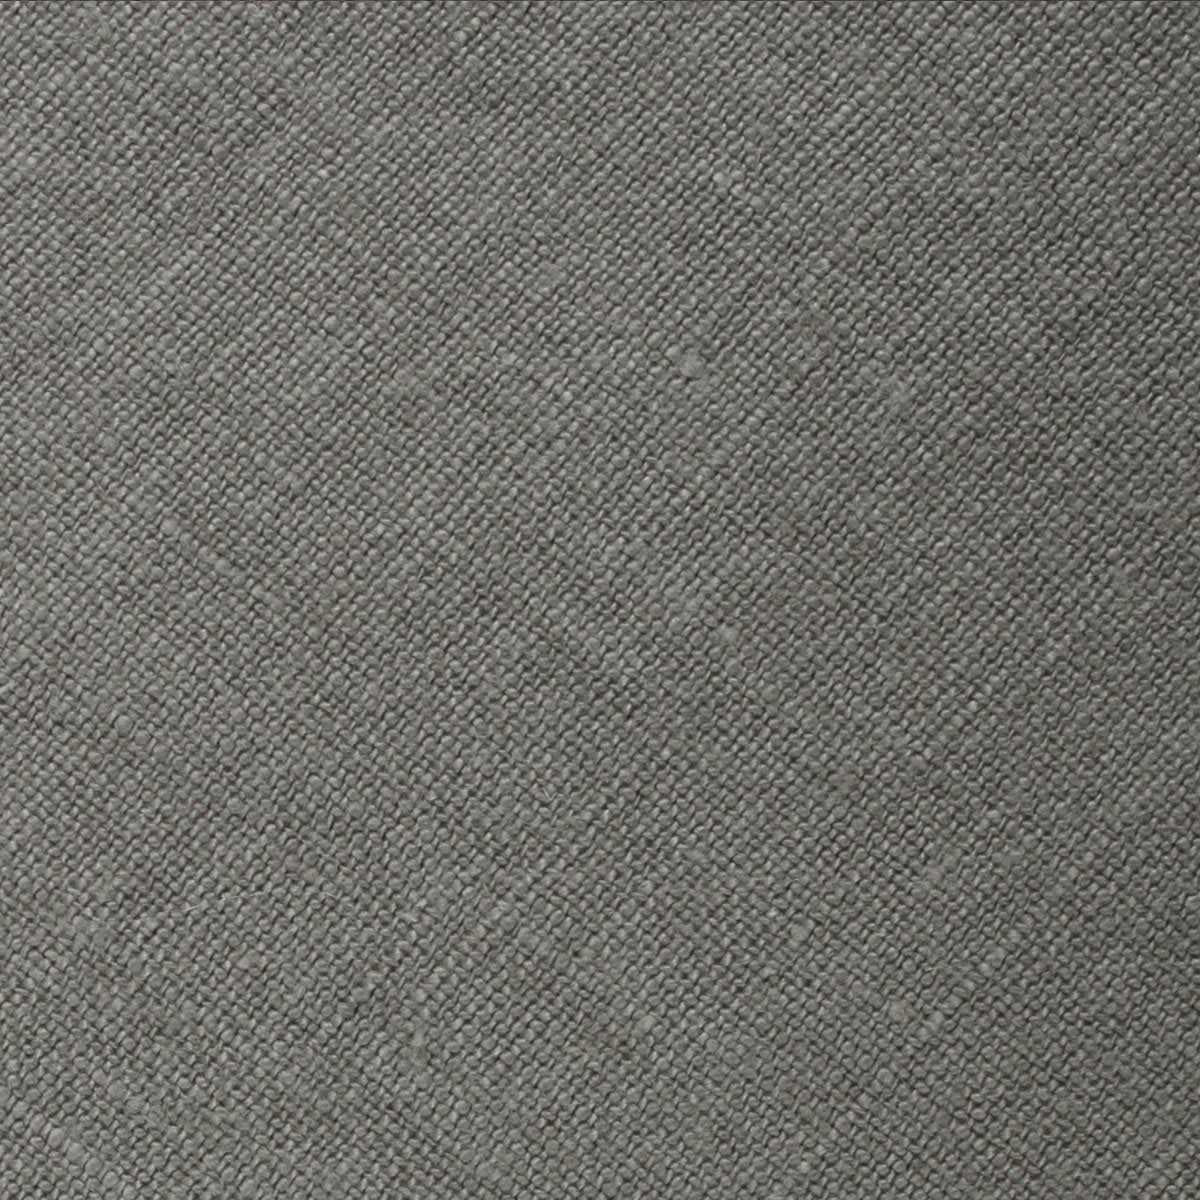 Mercury Charcoal Linen Necktie Fabric